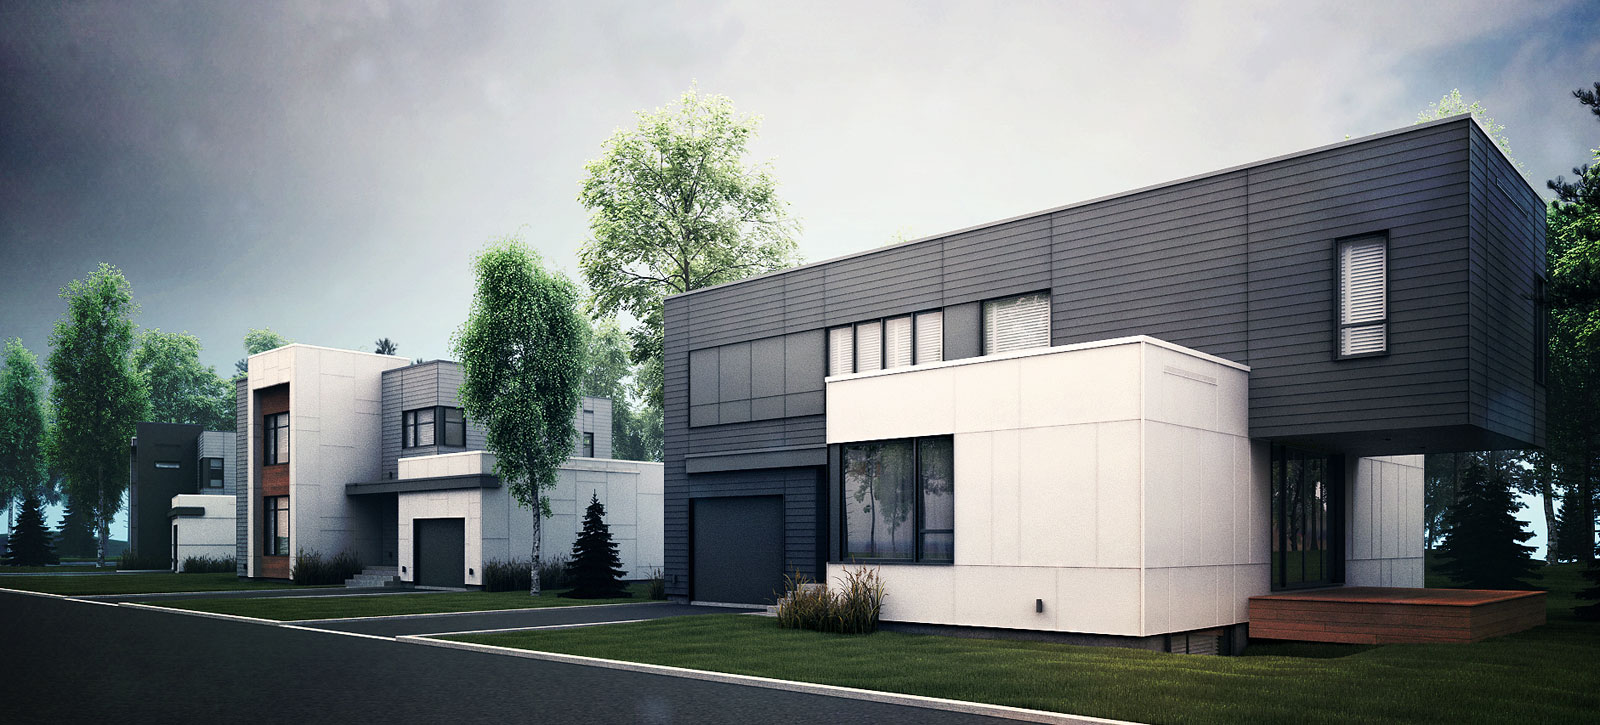 Zone C - Le nouveau Quartier immobilier avec maison contemporaine au style cubique à Québec